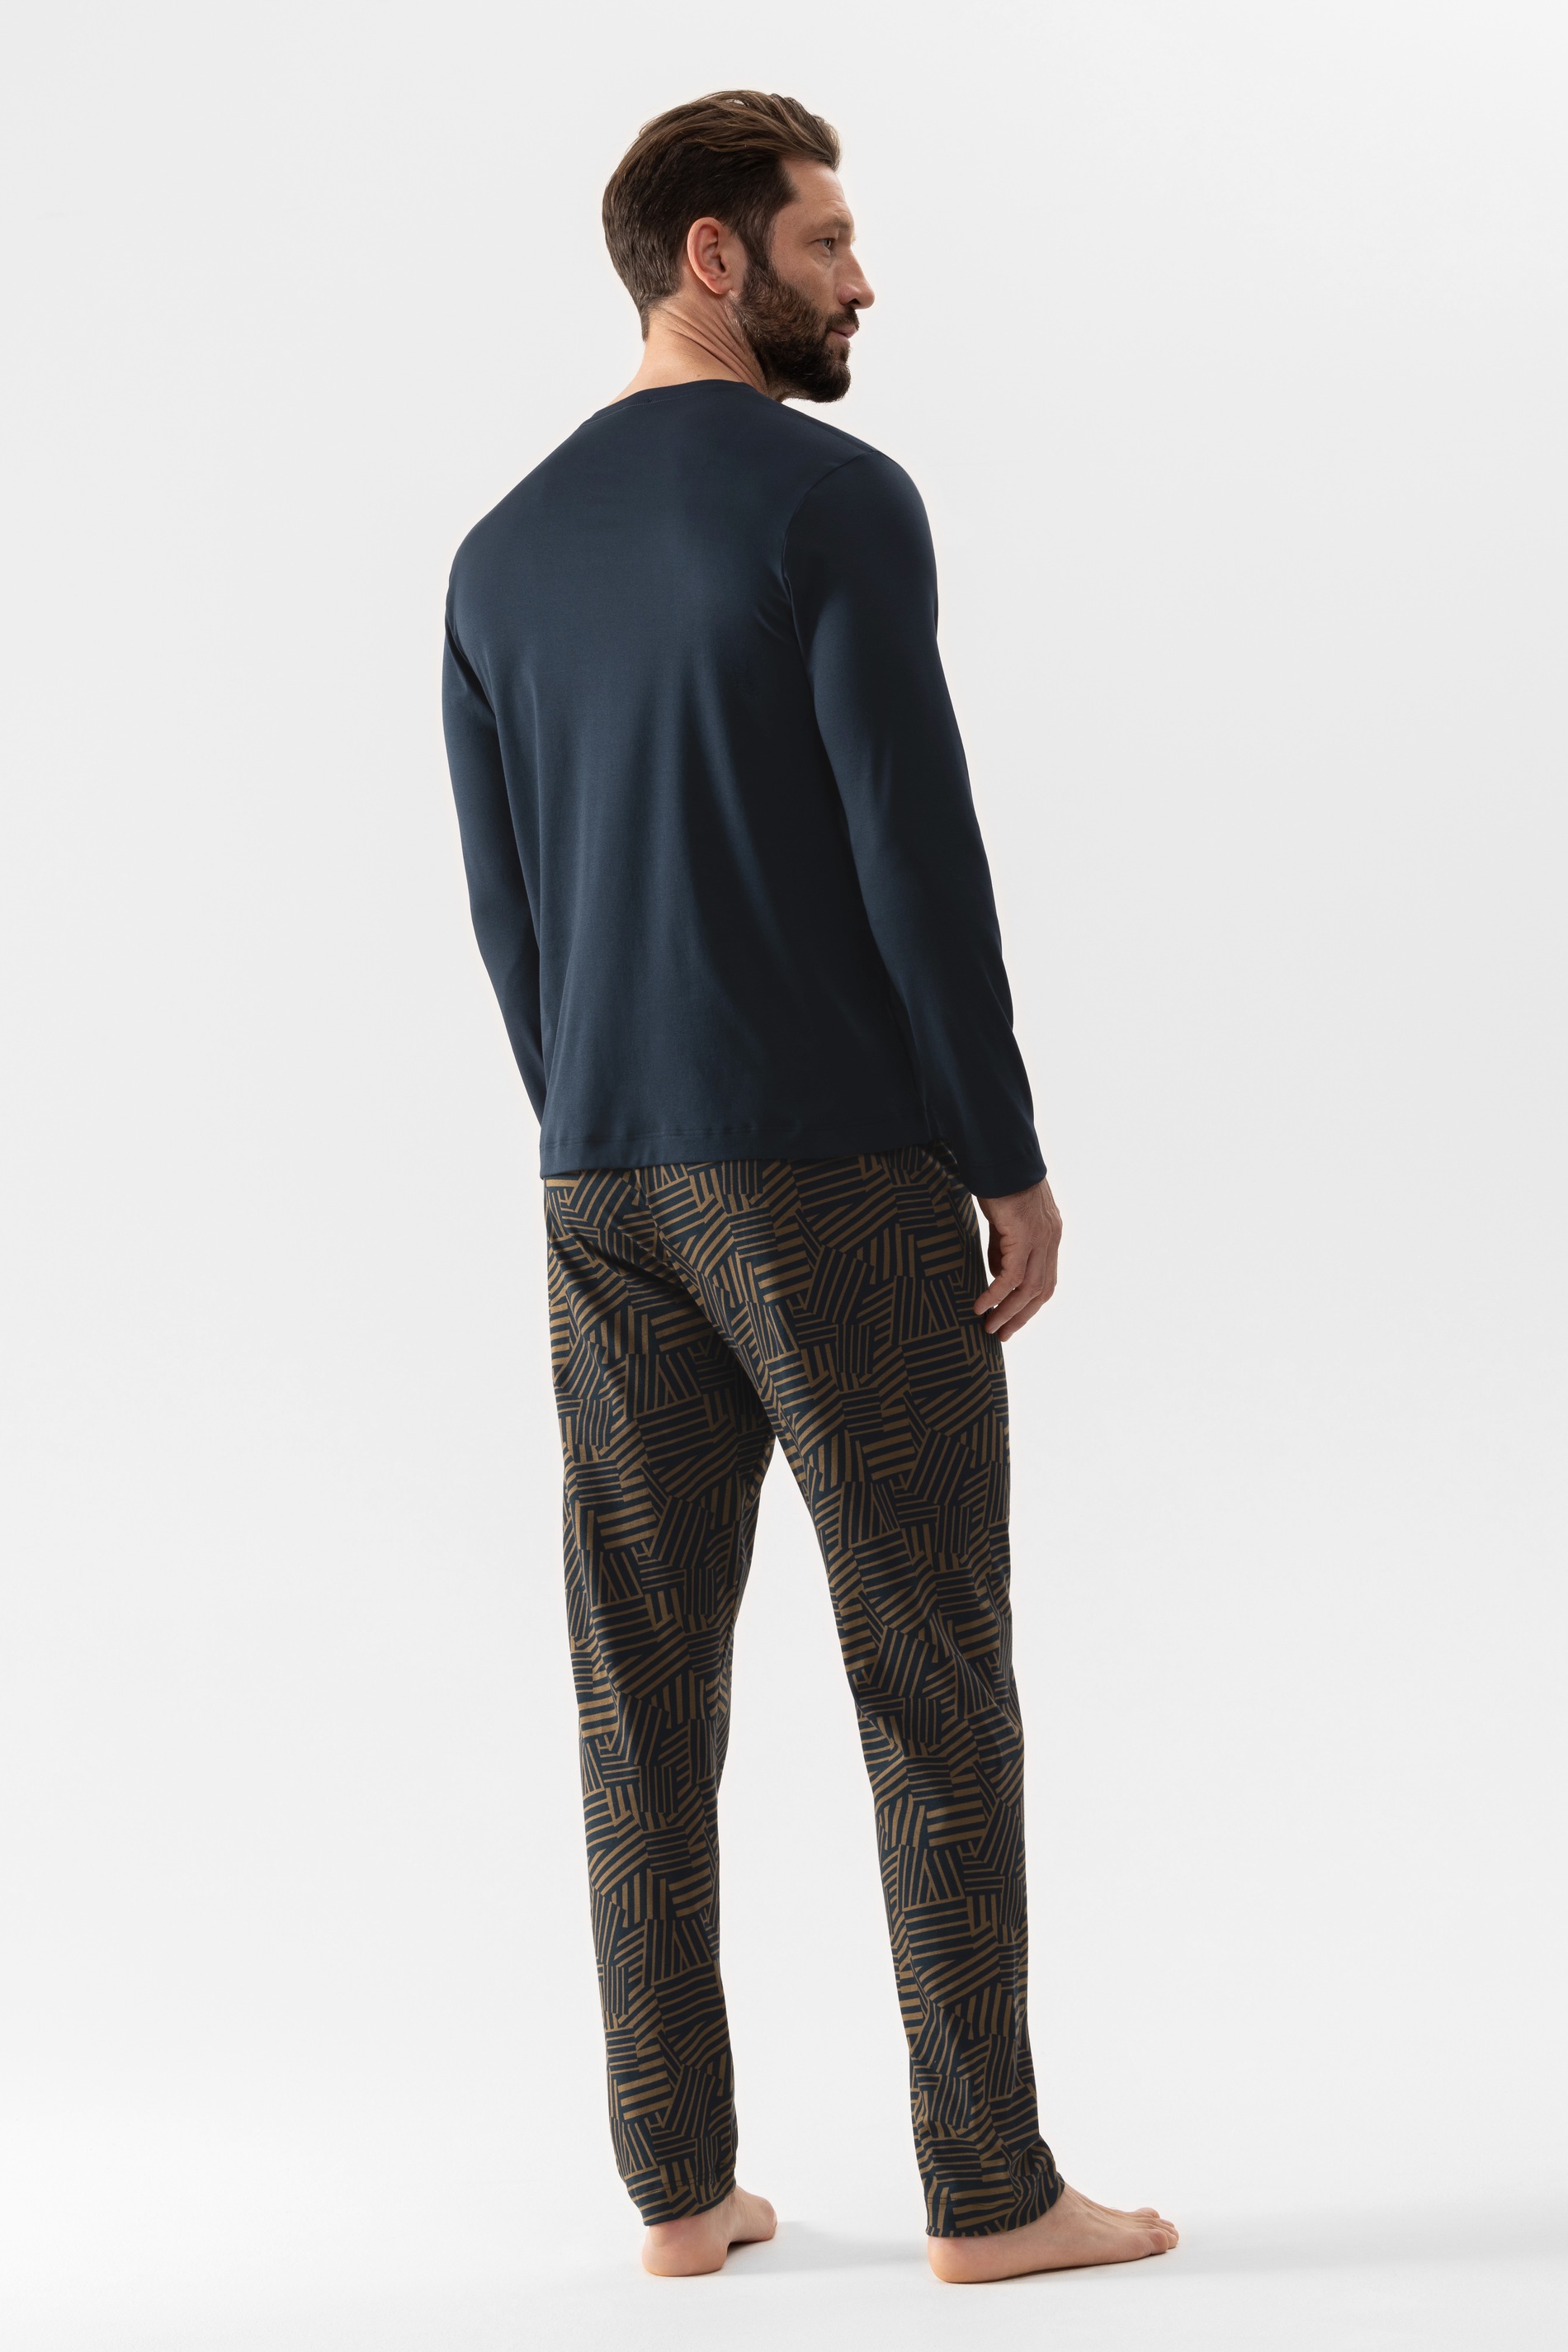 Pyjamas Serie Bornholm Rear View | mey®